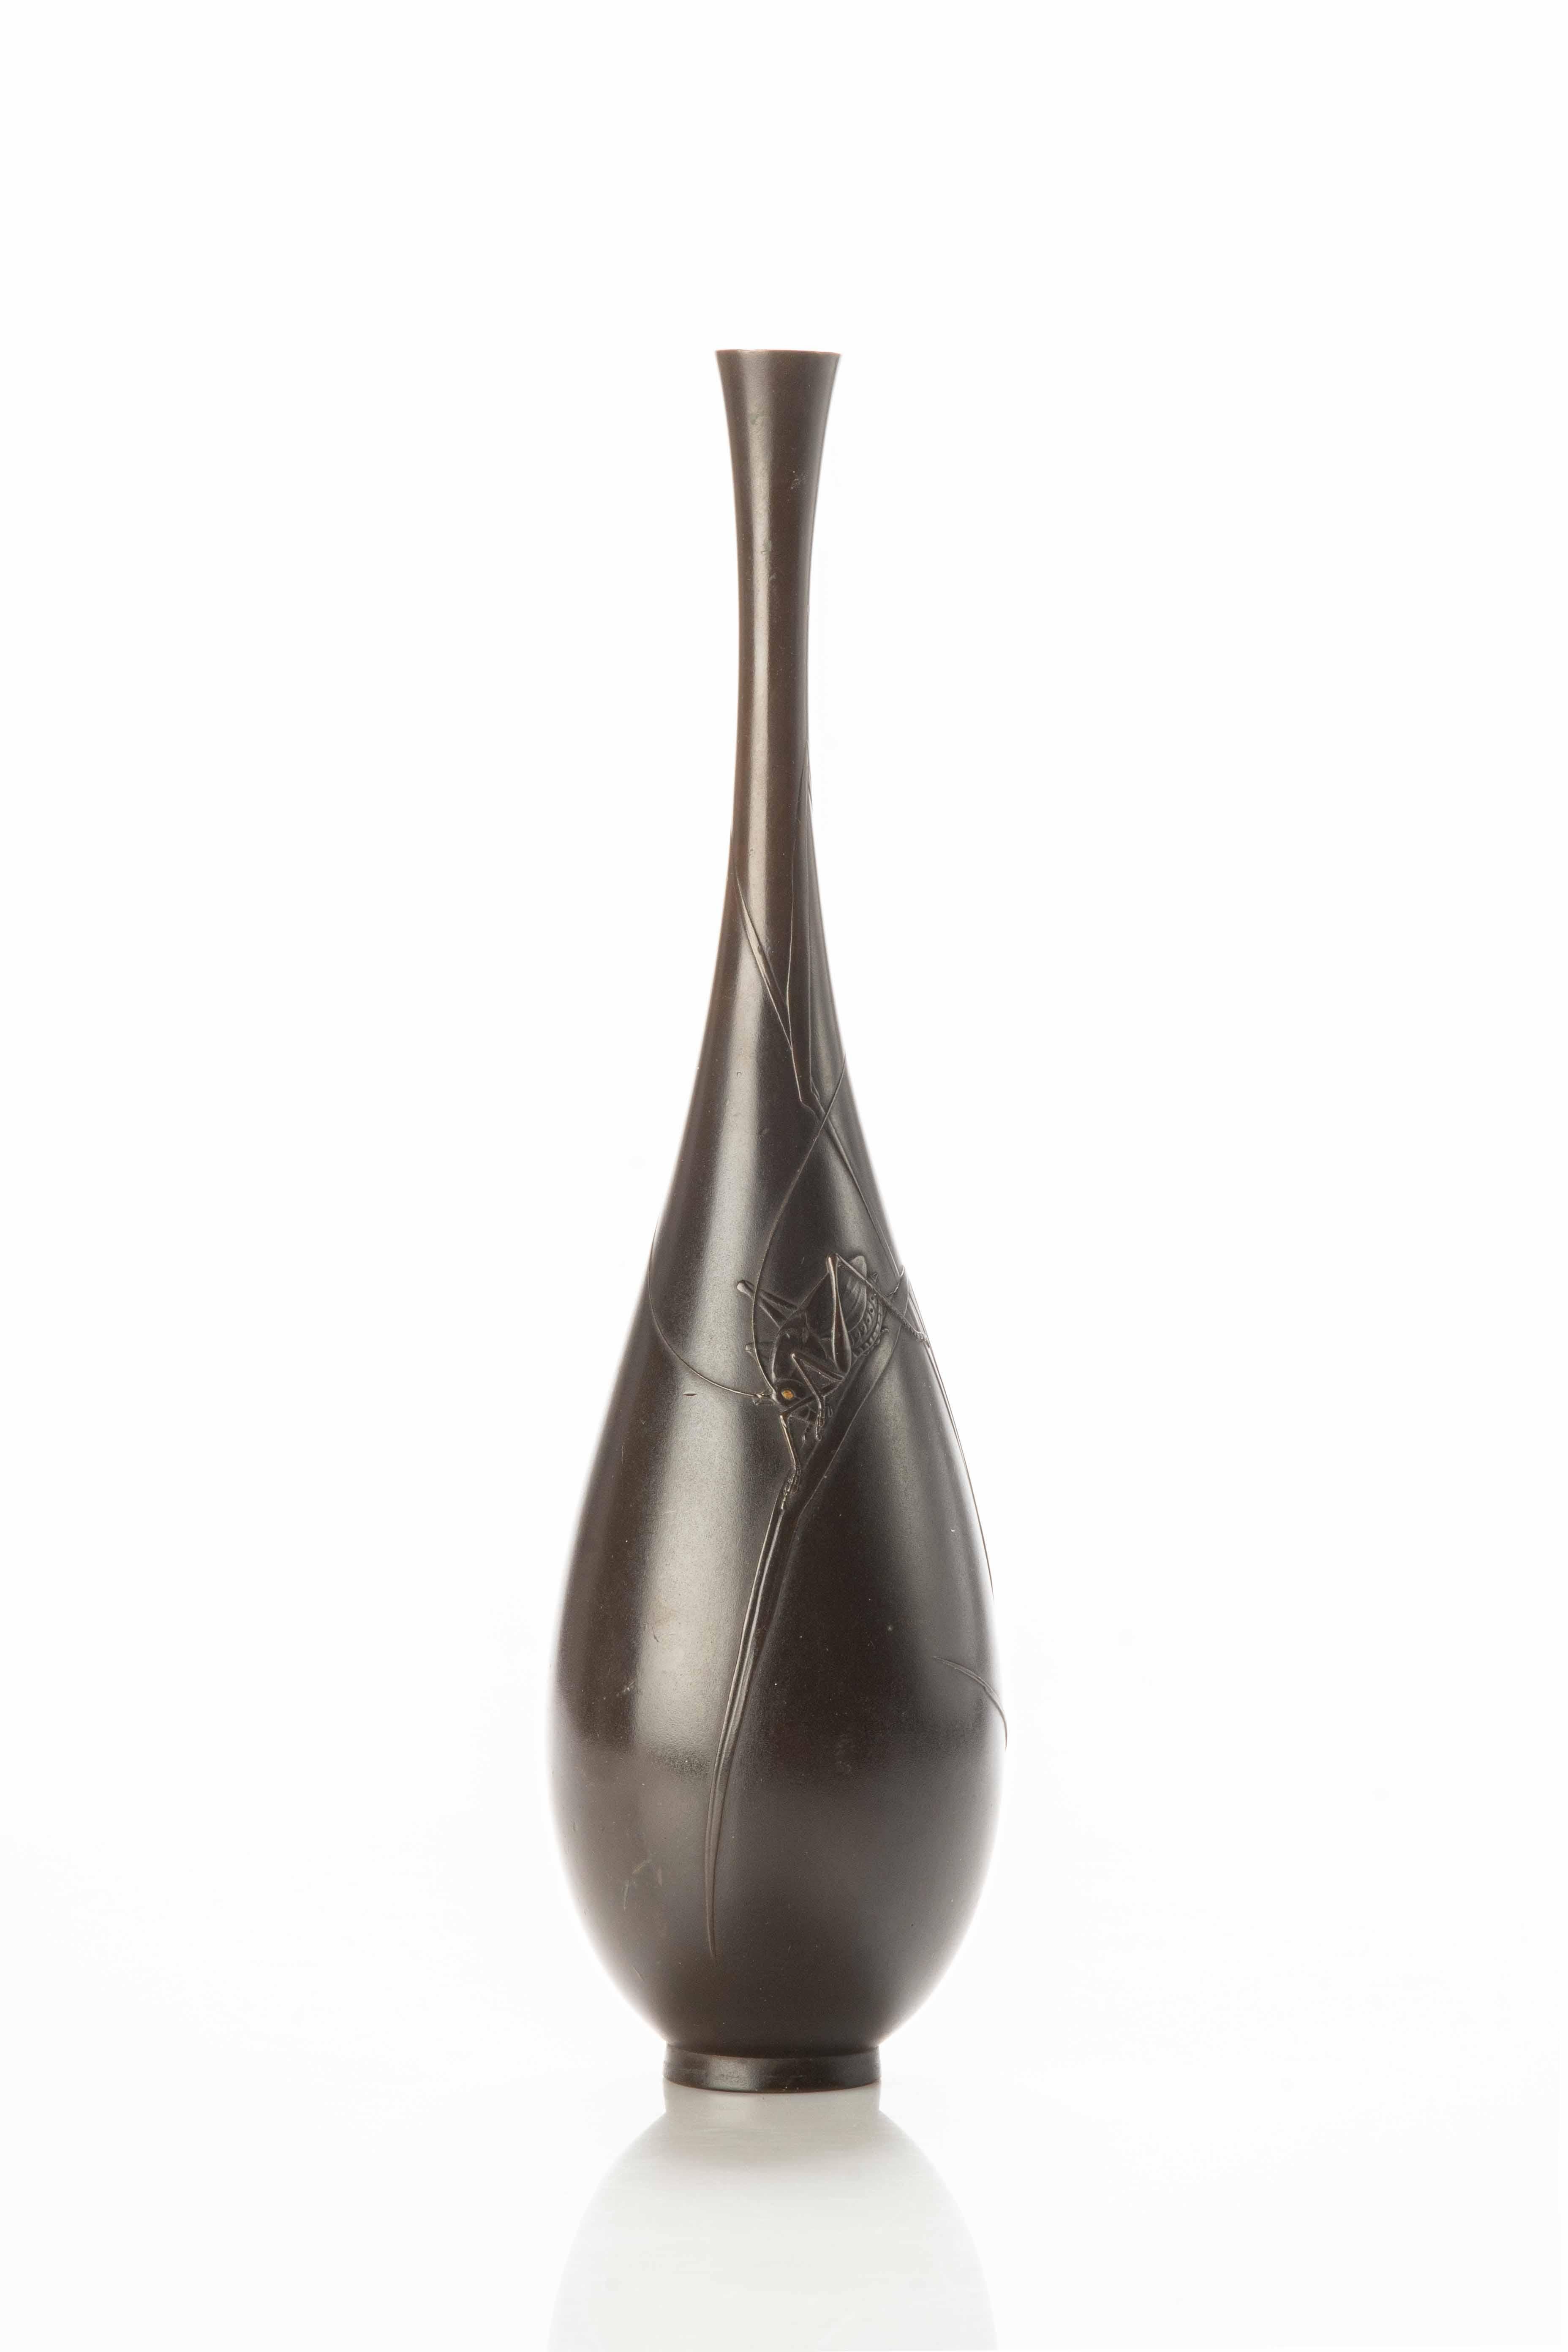 Eine schlanke Vase aus patinierter Bronze, die eine naturalistische Szene mit einer Grille auf Irisblättern darstellt.
Signiert Joun im Relief innerhalb einer ovalen Reserve.

Herkunft: Japan

Zeitraum: Meiji Ende des 19. Jahrhunderts.

Abmessungen: